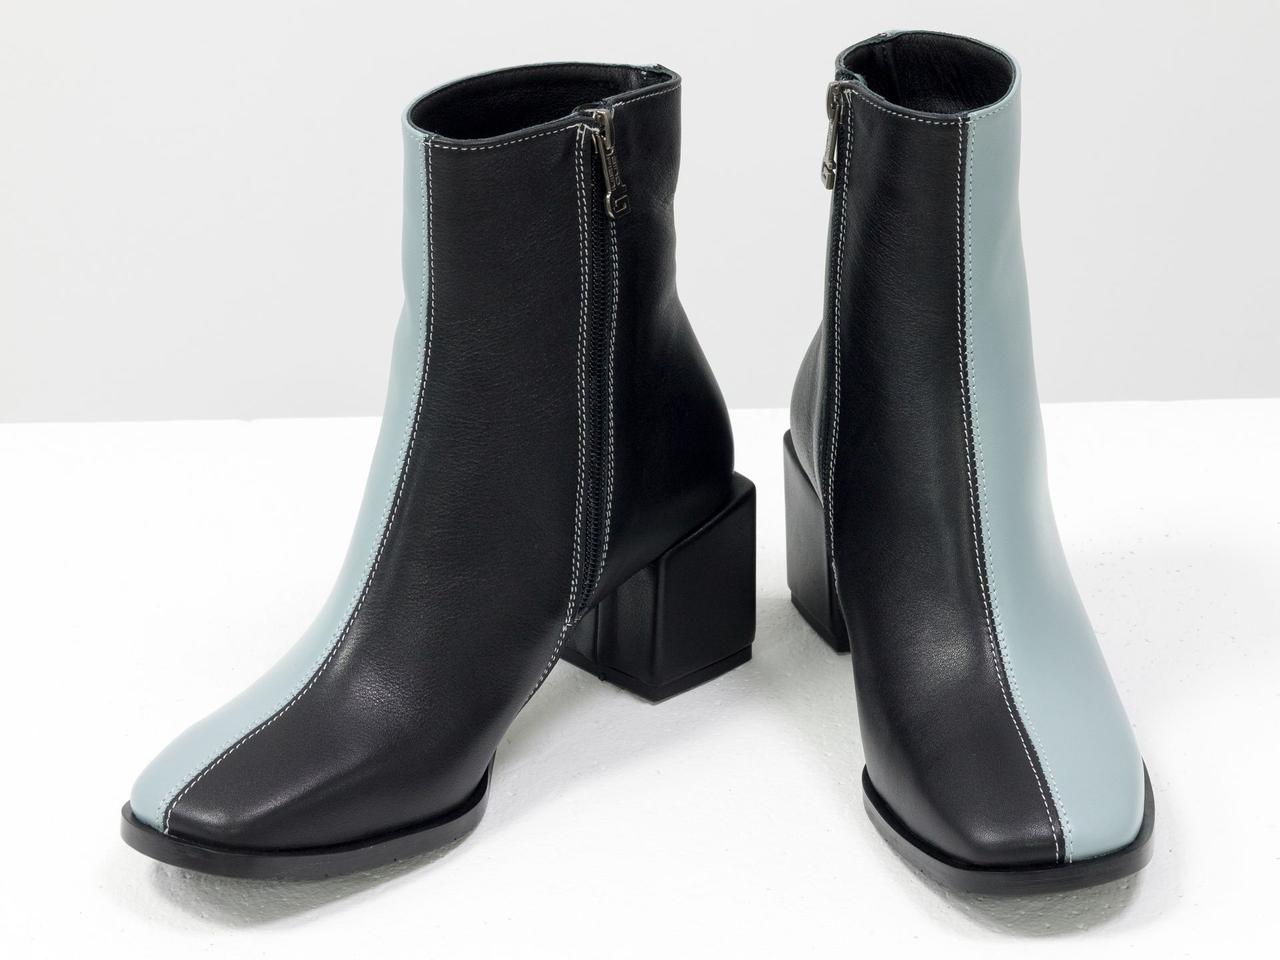 Класичні черевики чорного і сіро-блакитного кольору, на невисокому обтяжном підборах квадратної форми